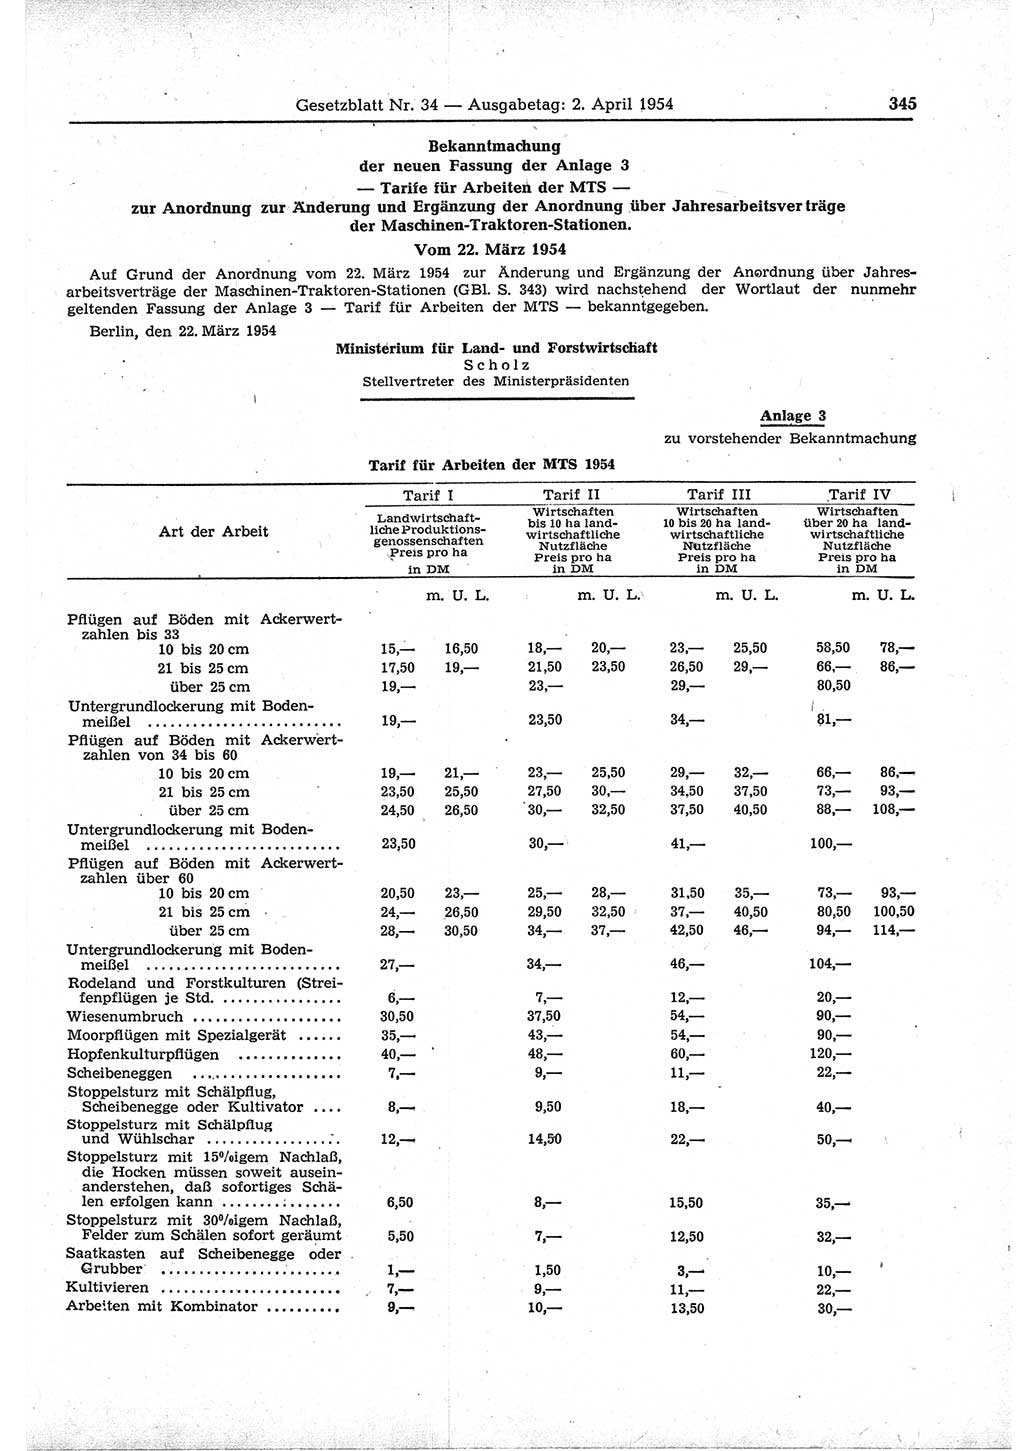 Gesetzblatt (GBl.) der Deutschen Demokratischen Republik (DDR) 1954, Seite 345 (GBl. DDR 1954, S. 345)